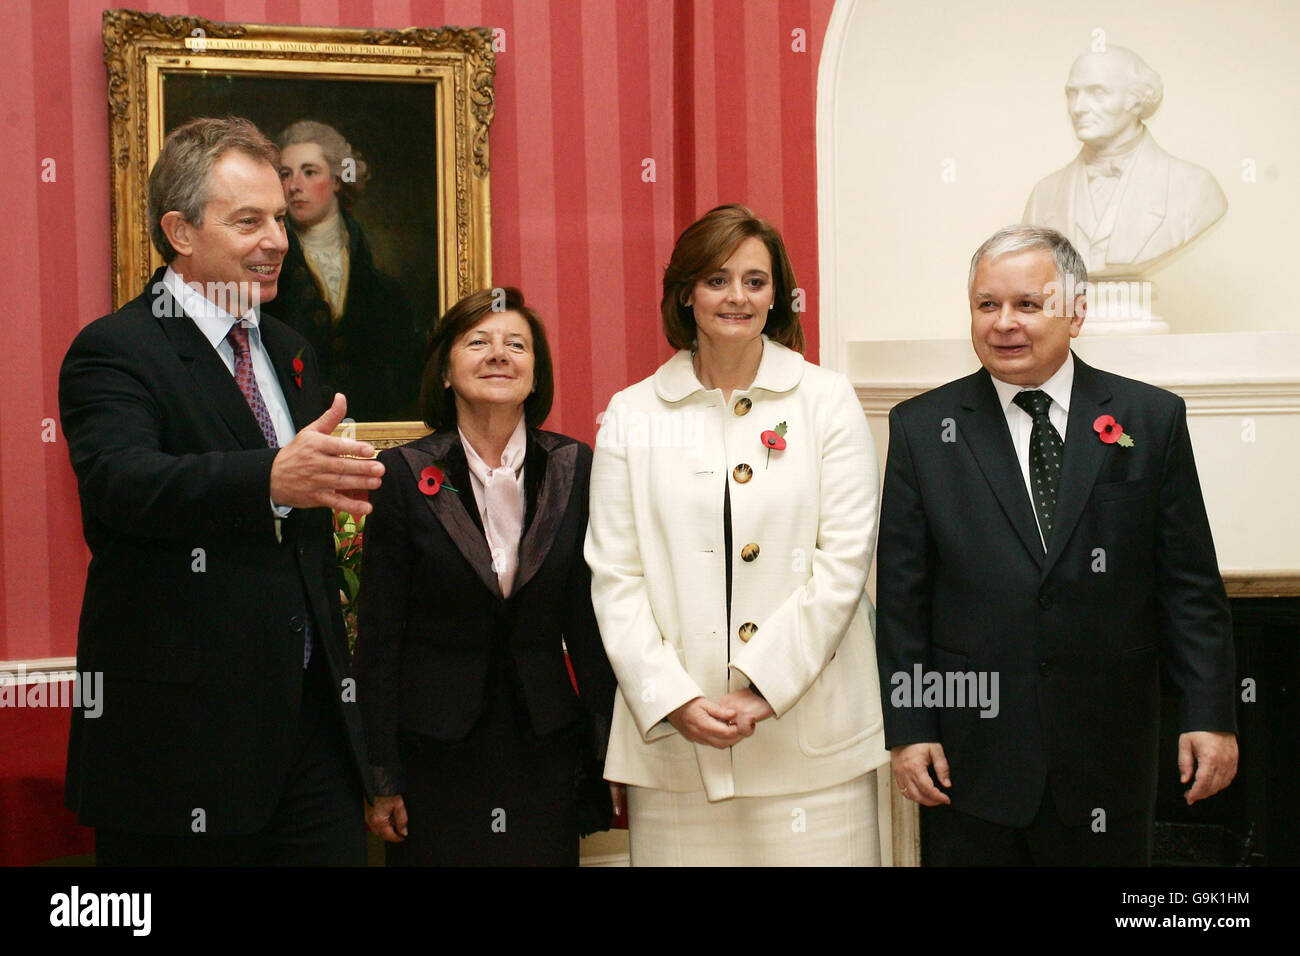 Der britische Premierminister Tony Blair (links) und seine Frau Cherie (dritte links) begrüßen den polnischen Präsidenten Lech Kaczynski und die First Lady Maria Kaczynska in der Downing Street 10 in London. Stockfoto